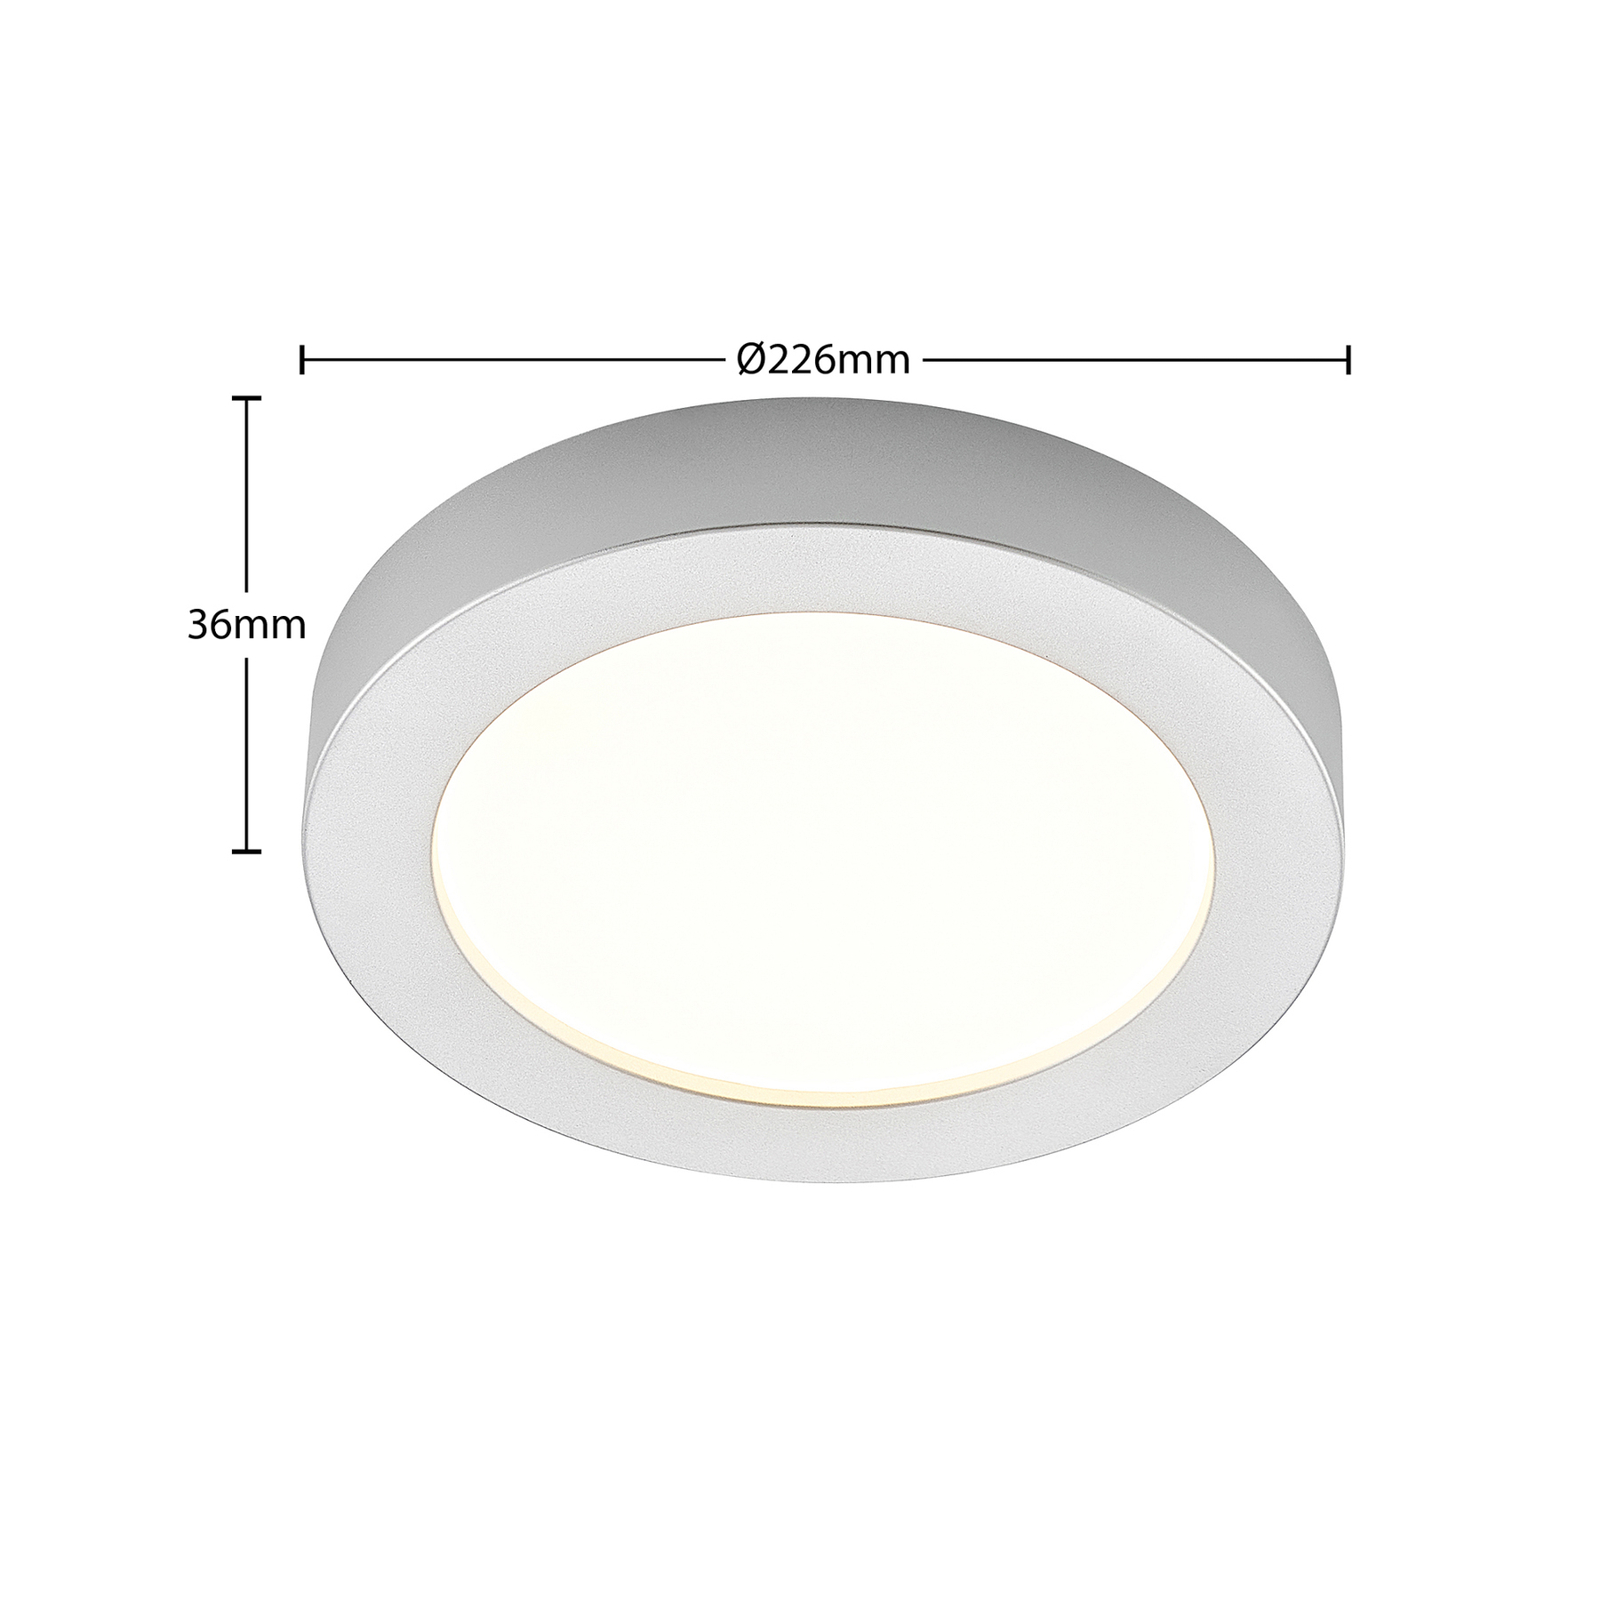 Prios LED stropní svítidlo Edwina, stříbrné, 22,6 cm, 10 ks, stmívatelné